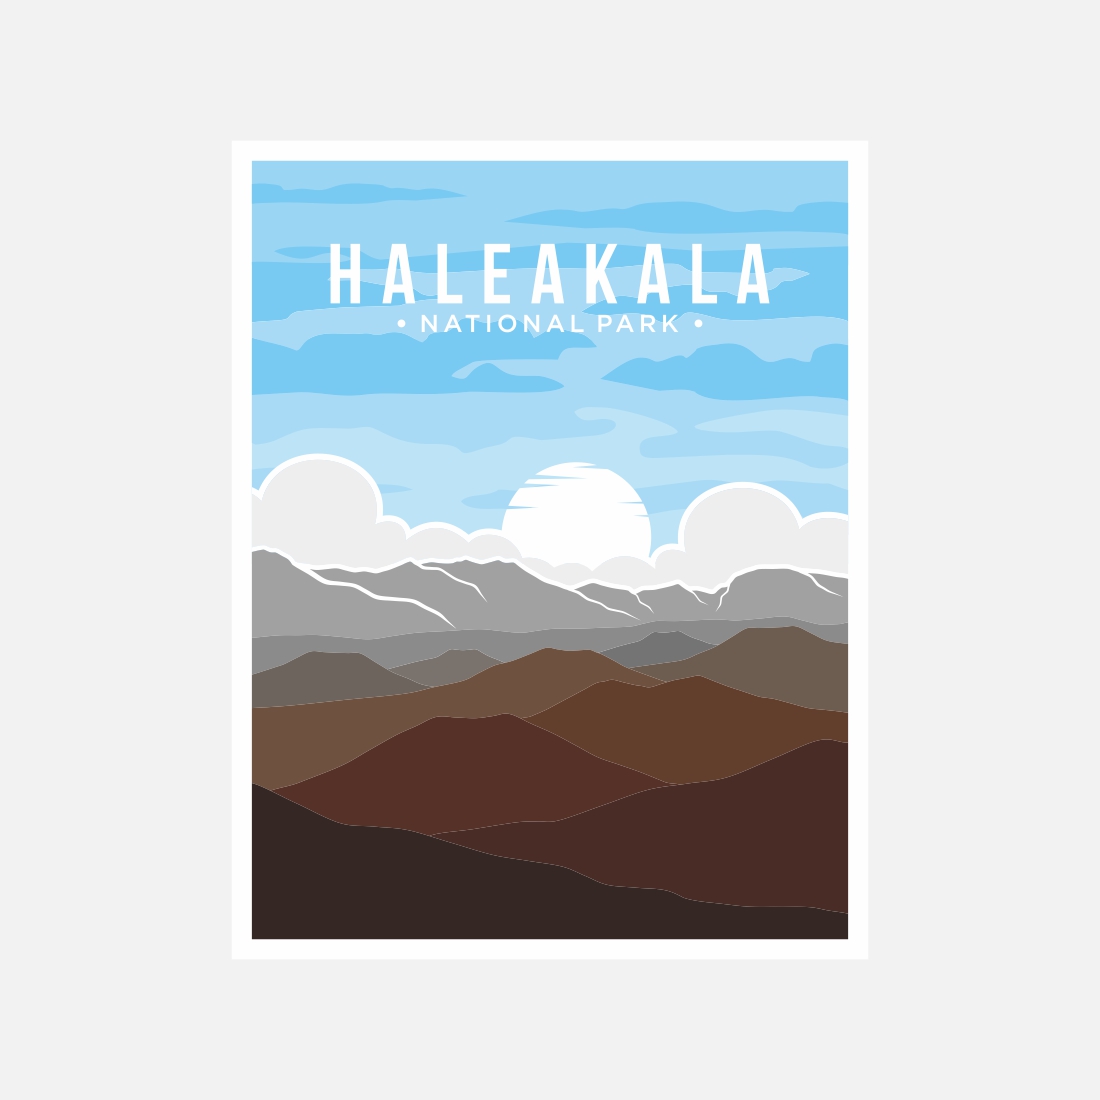 Haleakala National Park poster vector illustration design – Only $8 preview image.